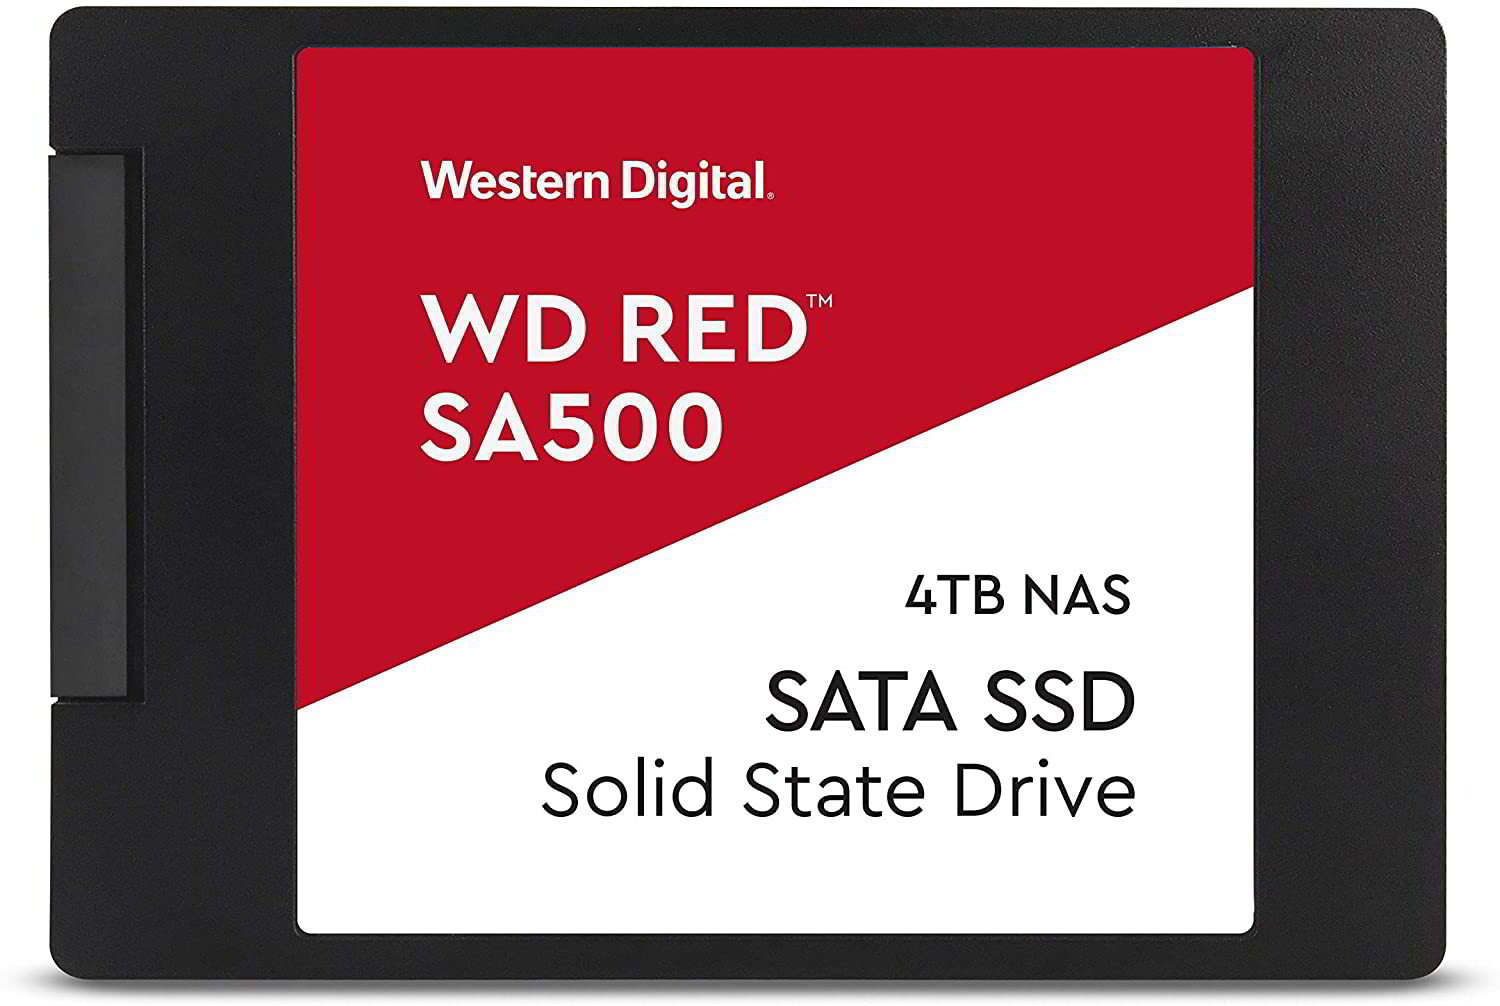 Western digital - red sa500 nas 4tb - wds400t1r0a